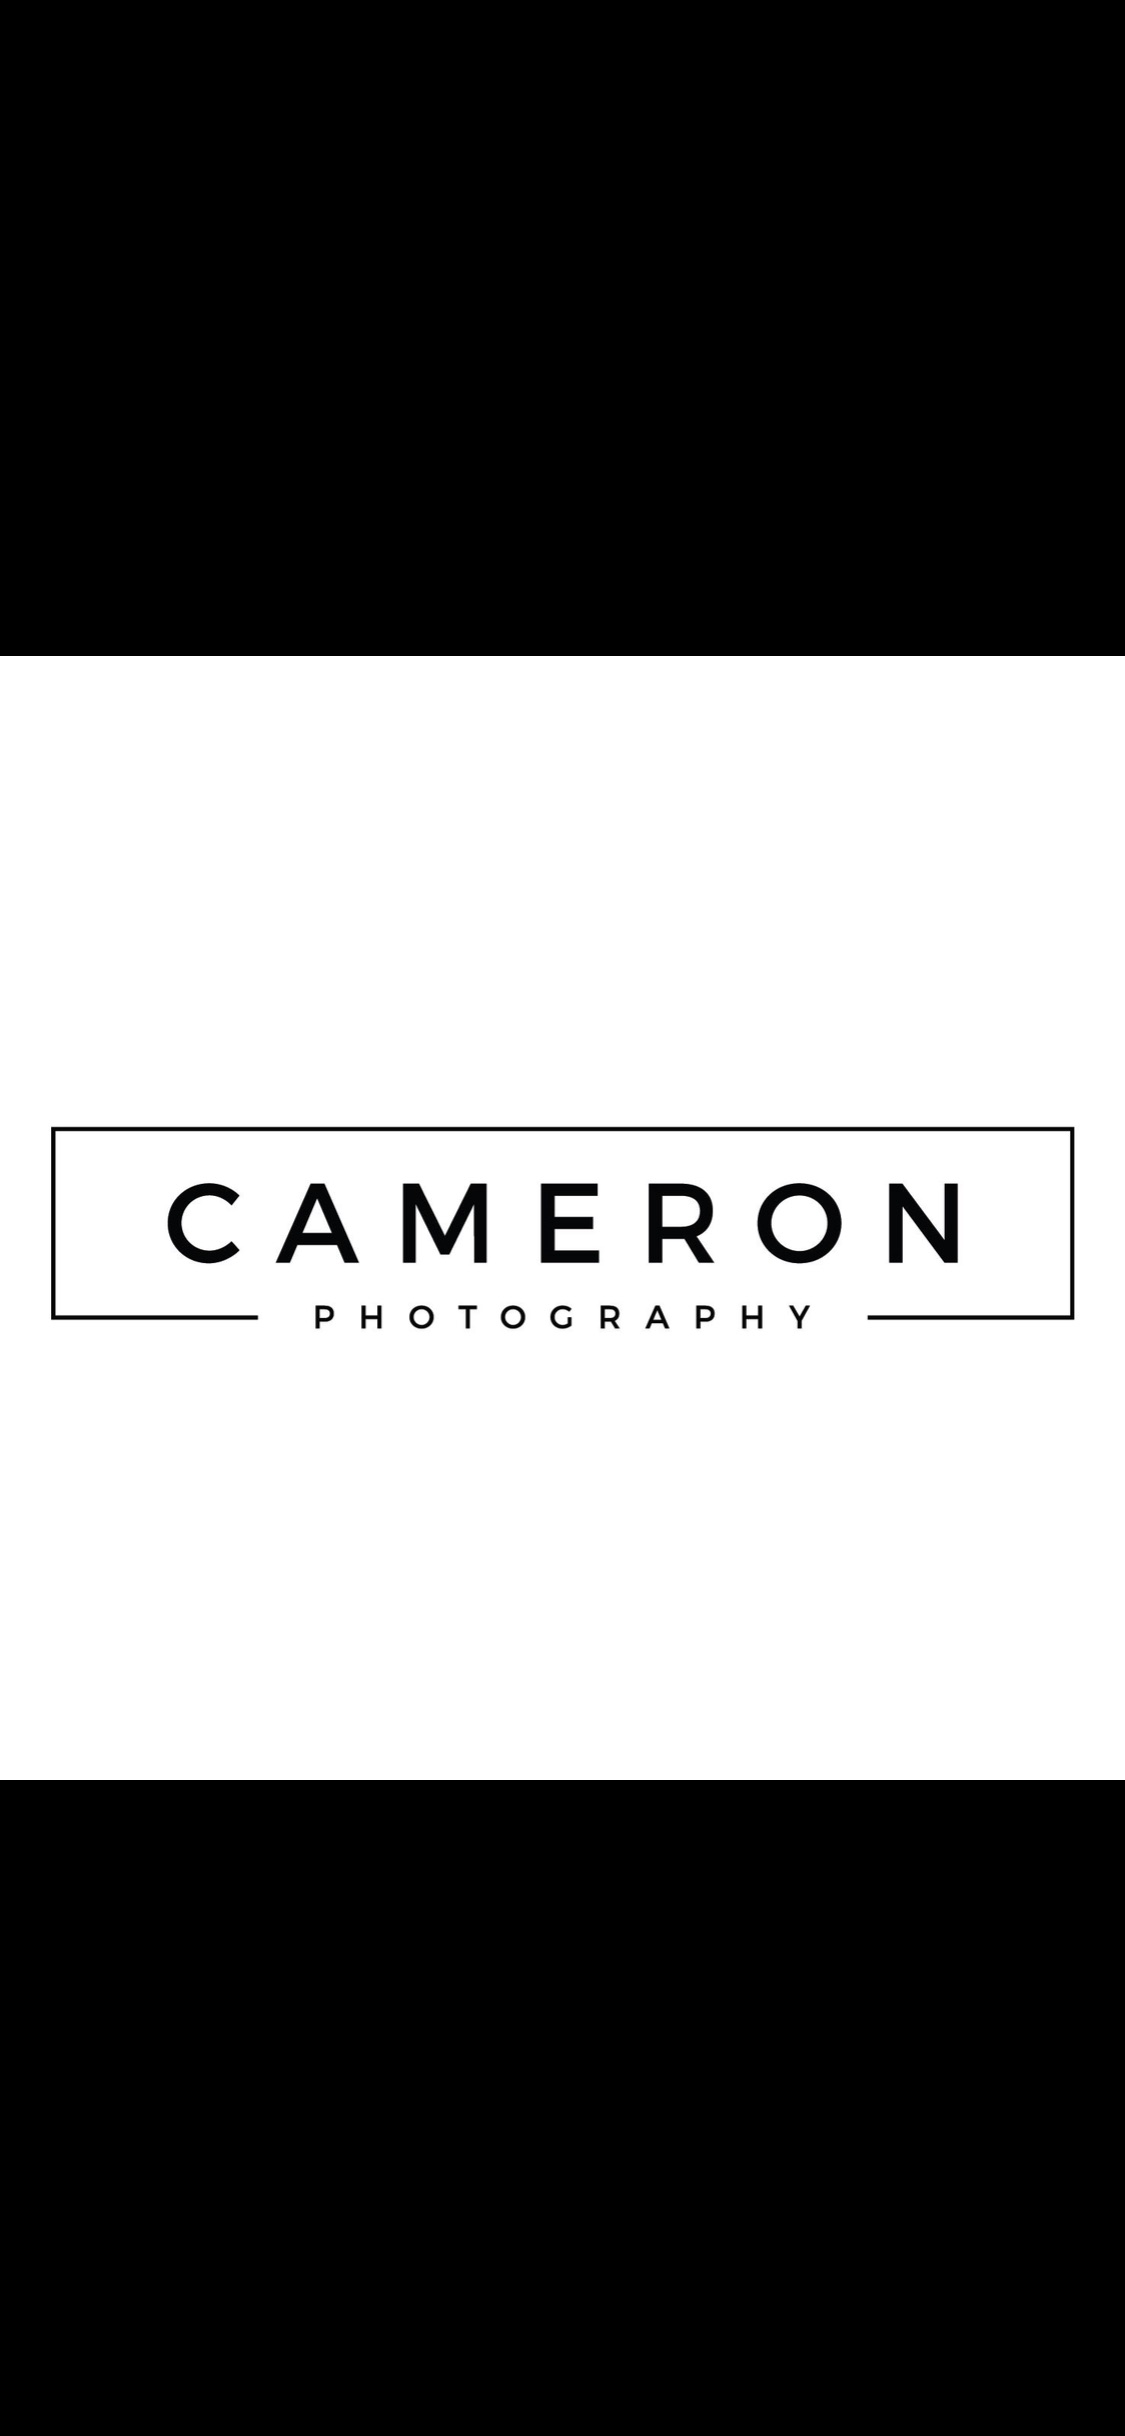 Logo of Cameron Photography